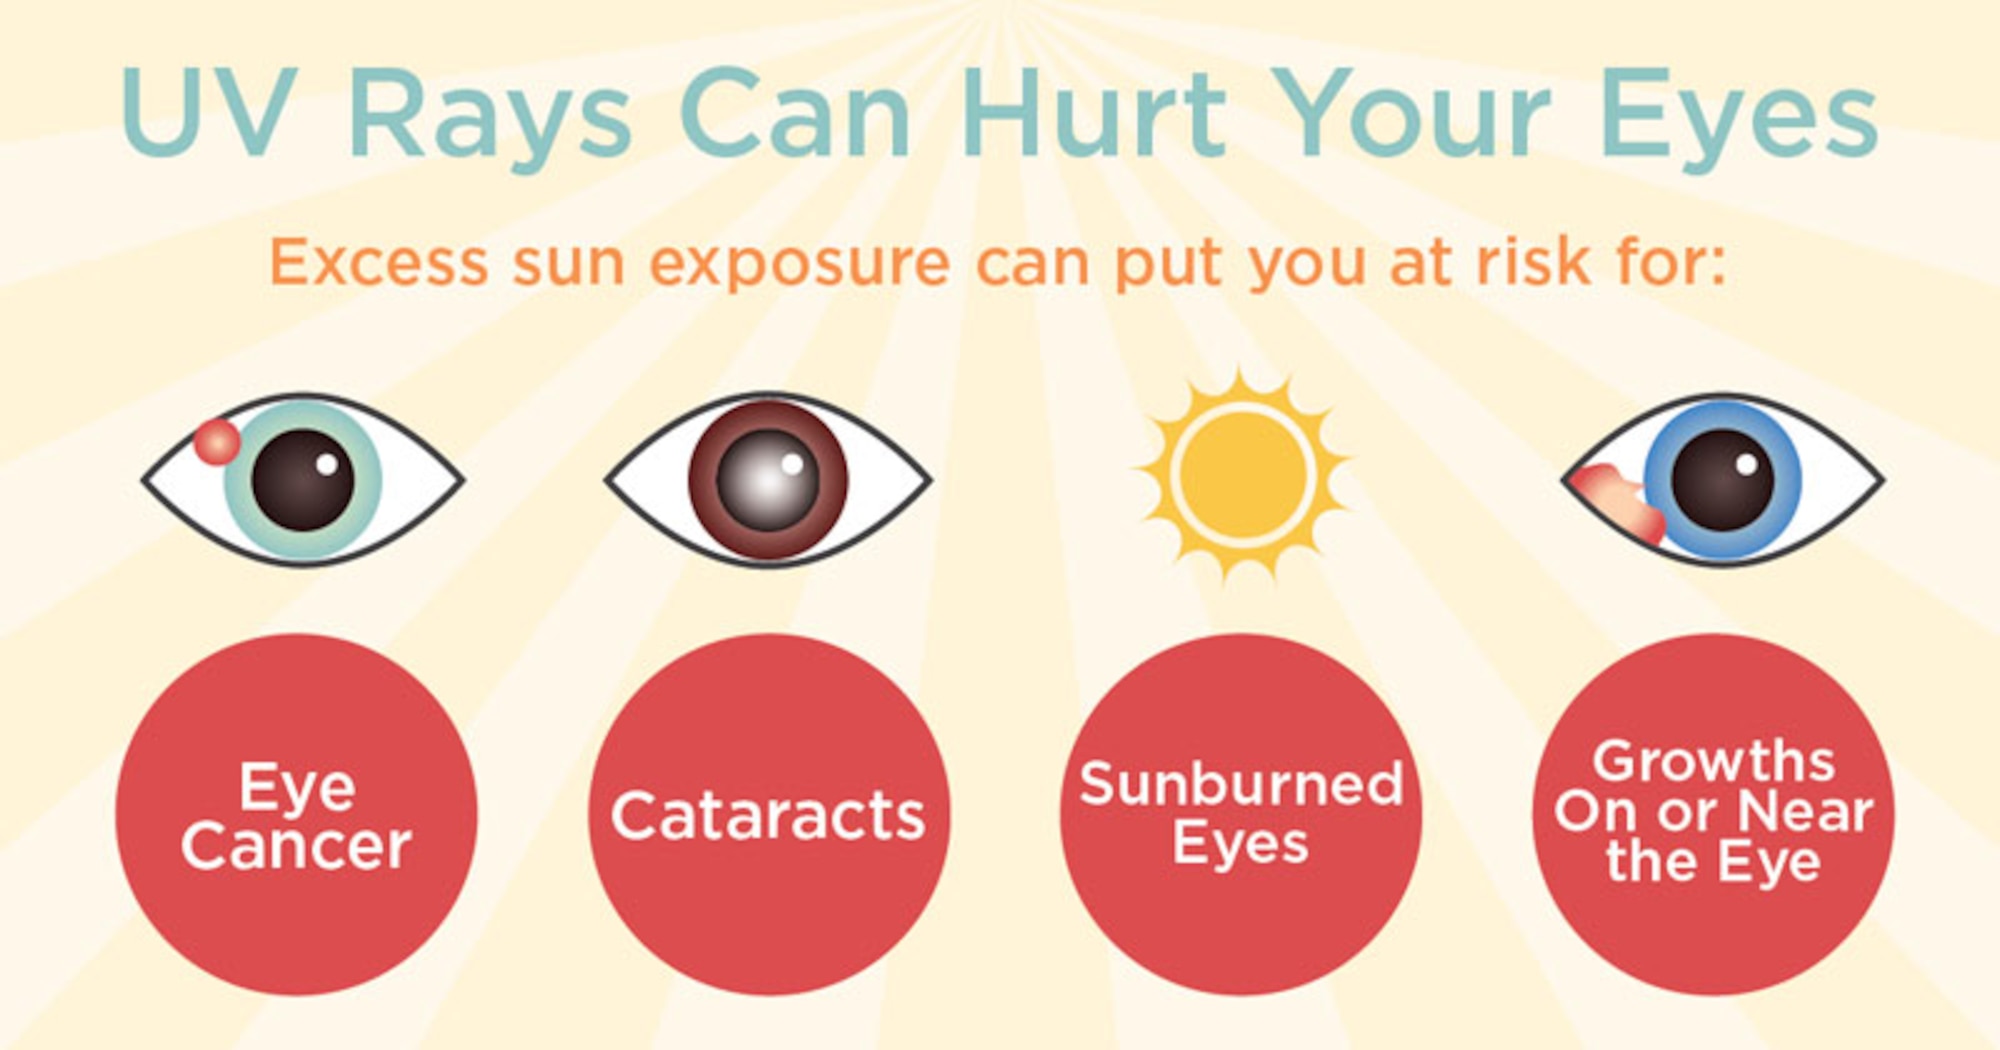 Does UV damage eyes?